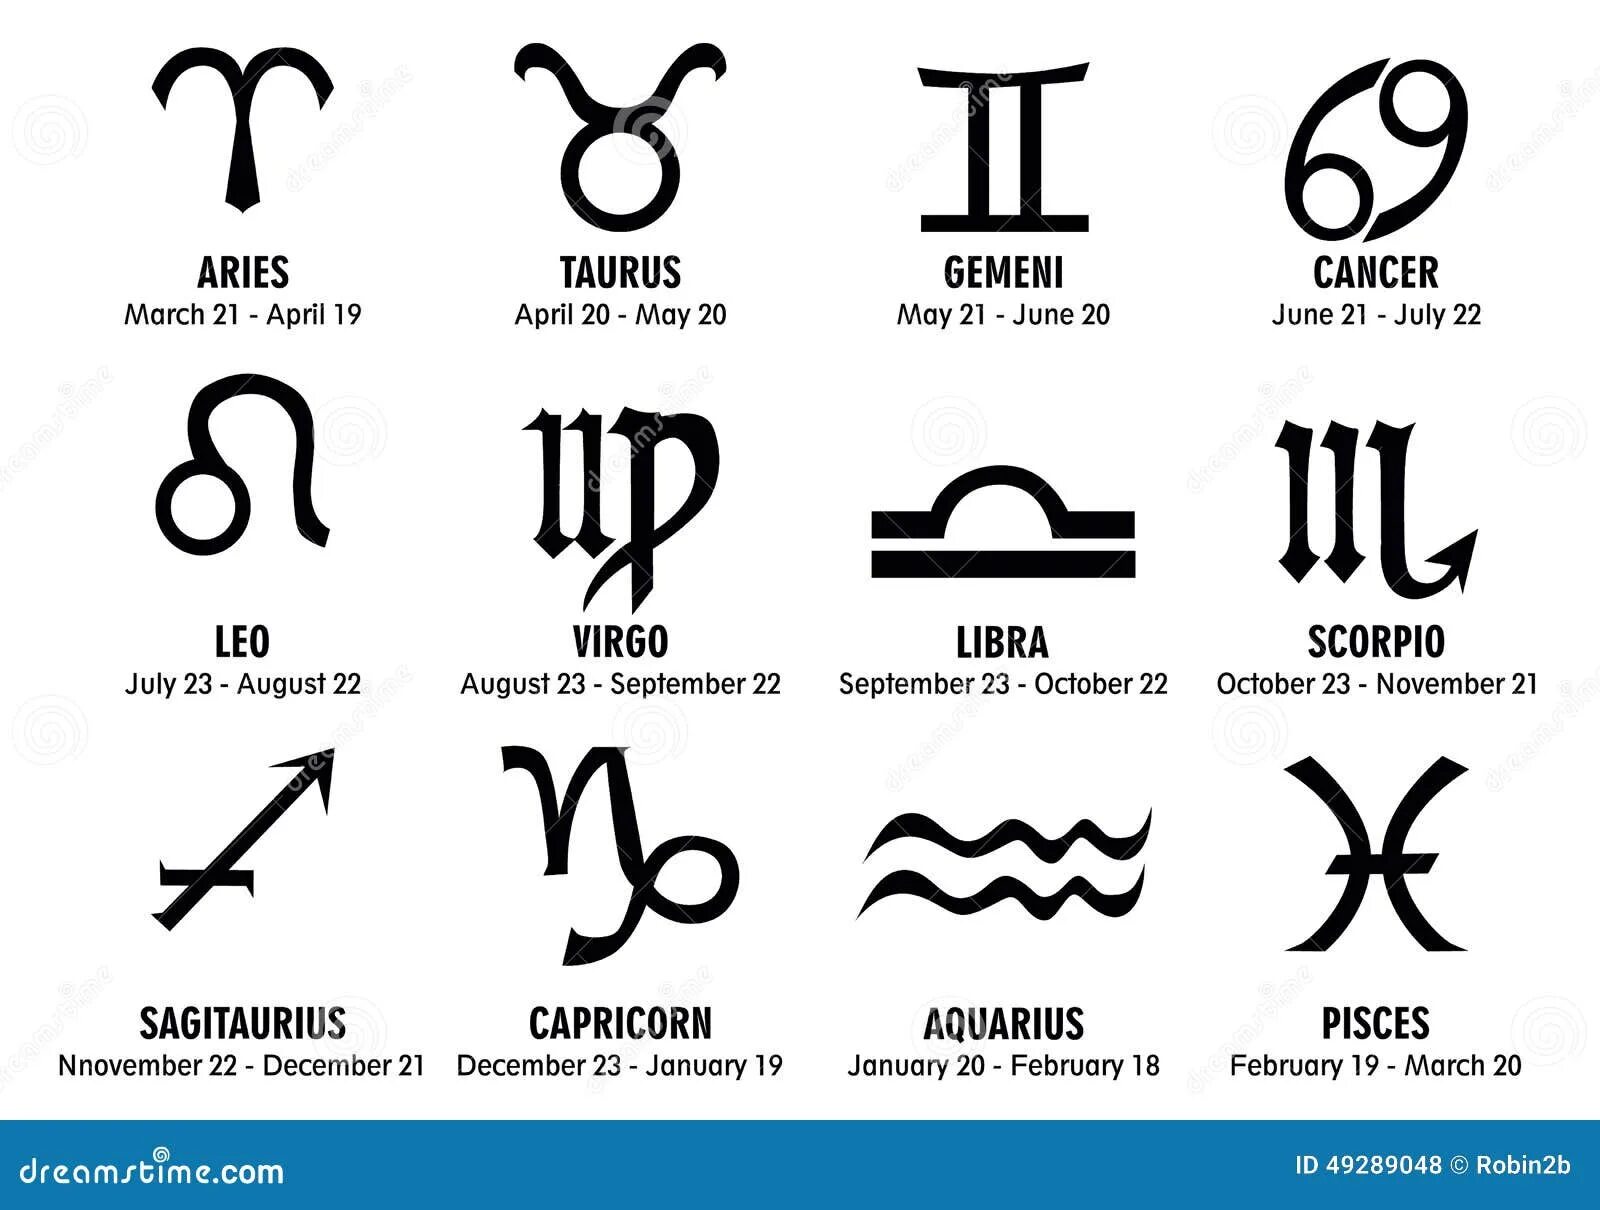 На стыке двух знаков зодиака как называется. Знаки зодиака. Знаки зодиака символы. Символическое изображение знаков зодиака. Обозначение всех знаков зодиака.